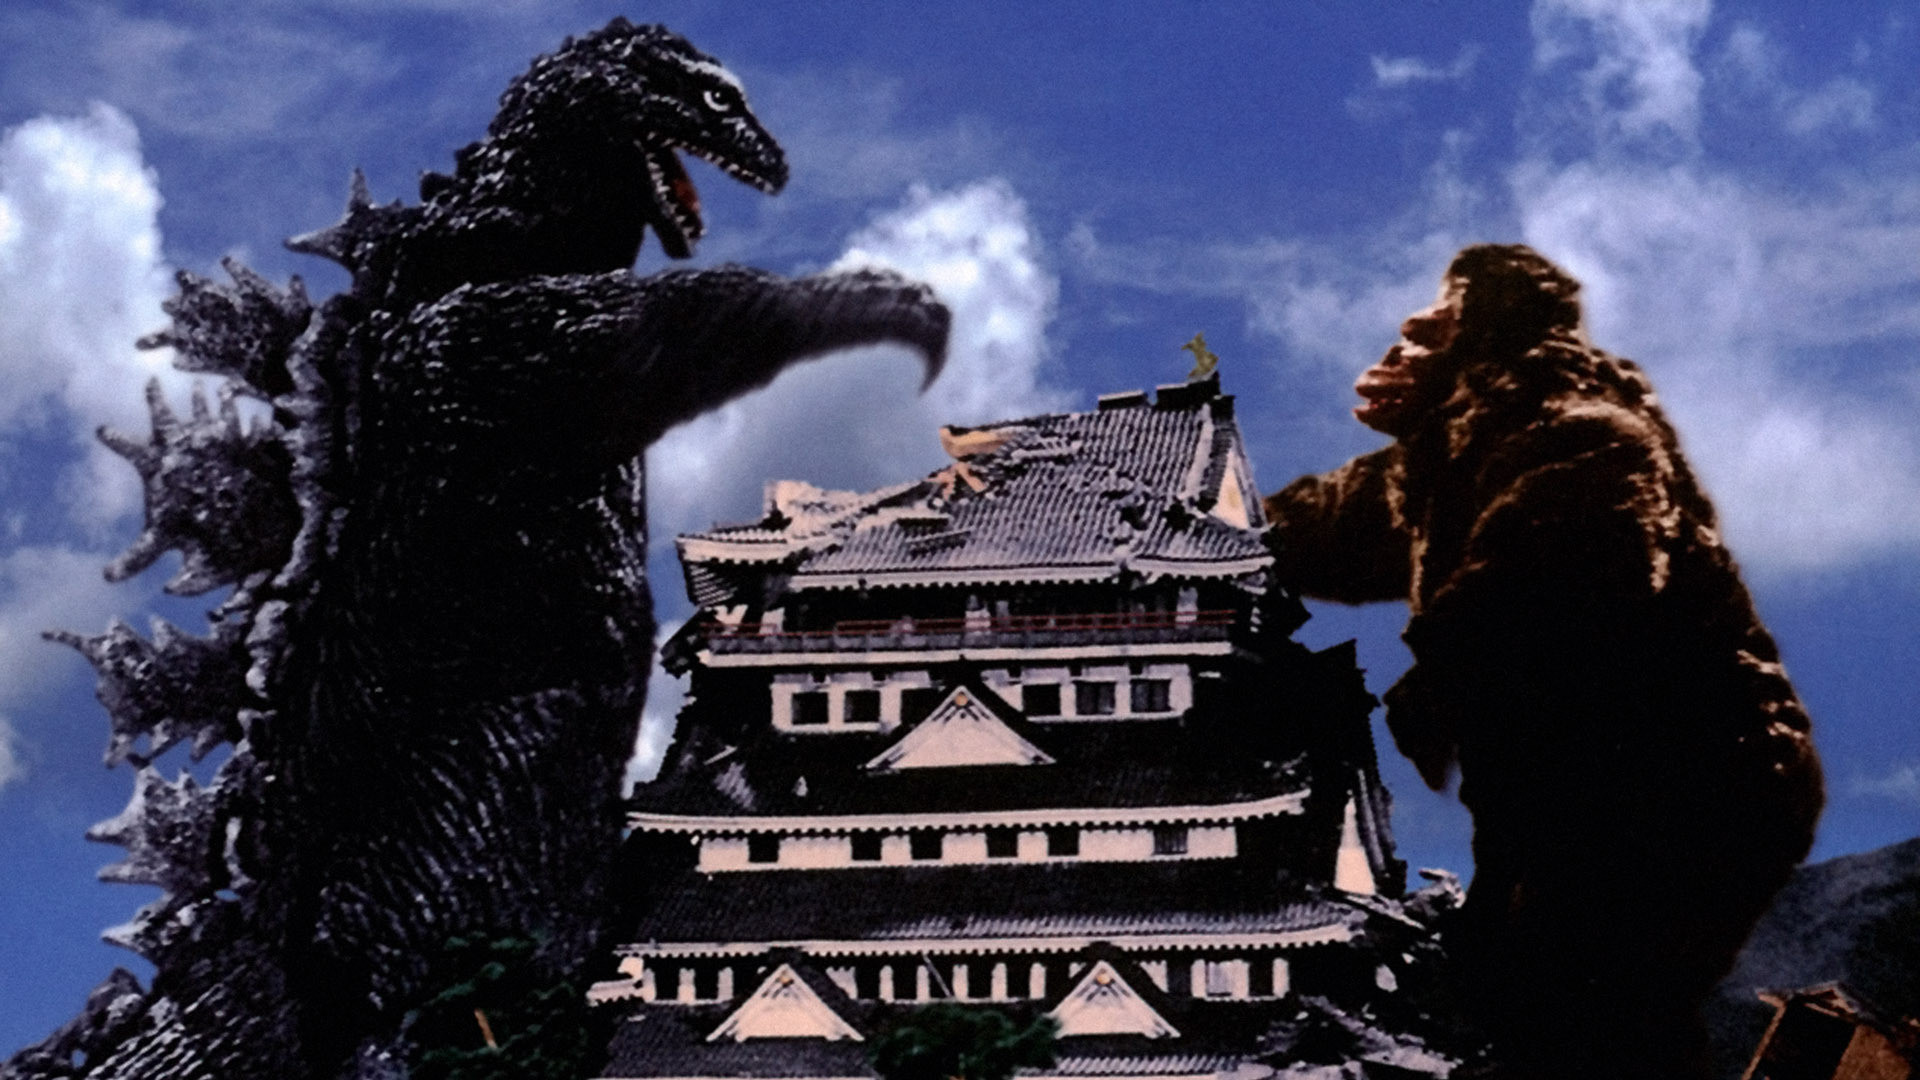 King King vs Godzilla